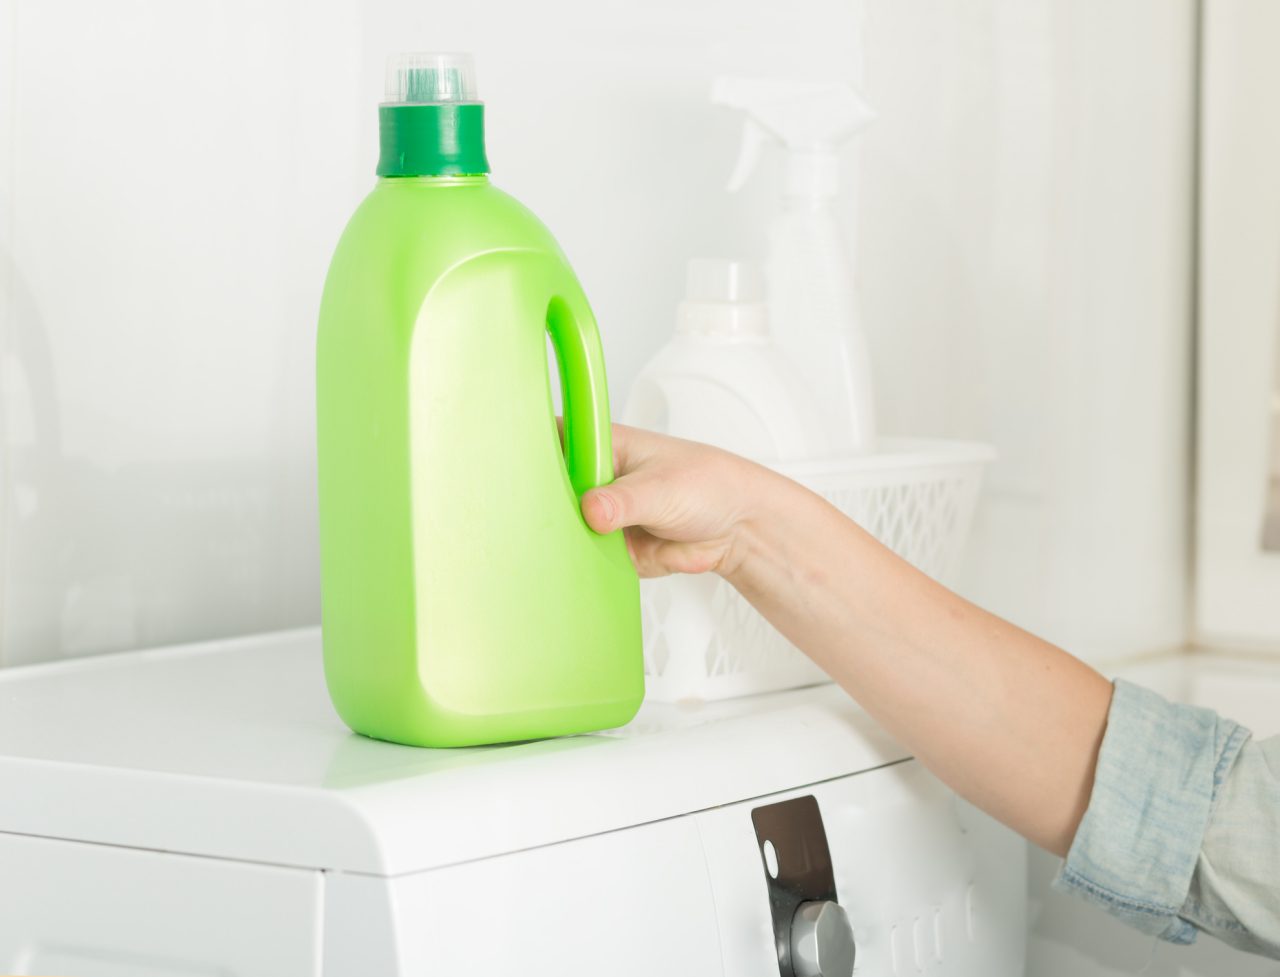 Bottle of detergent on a washing machine